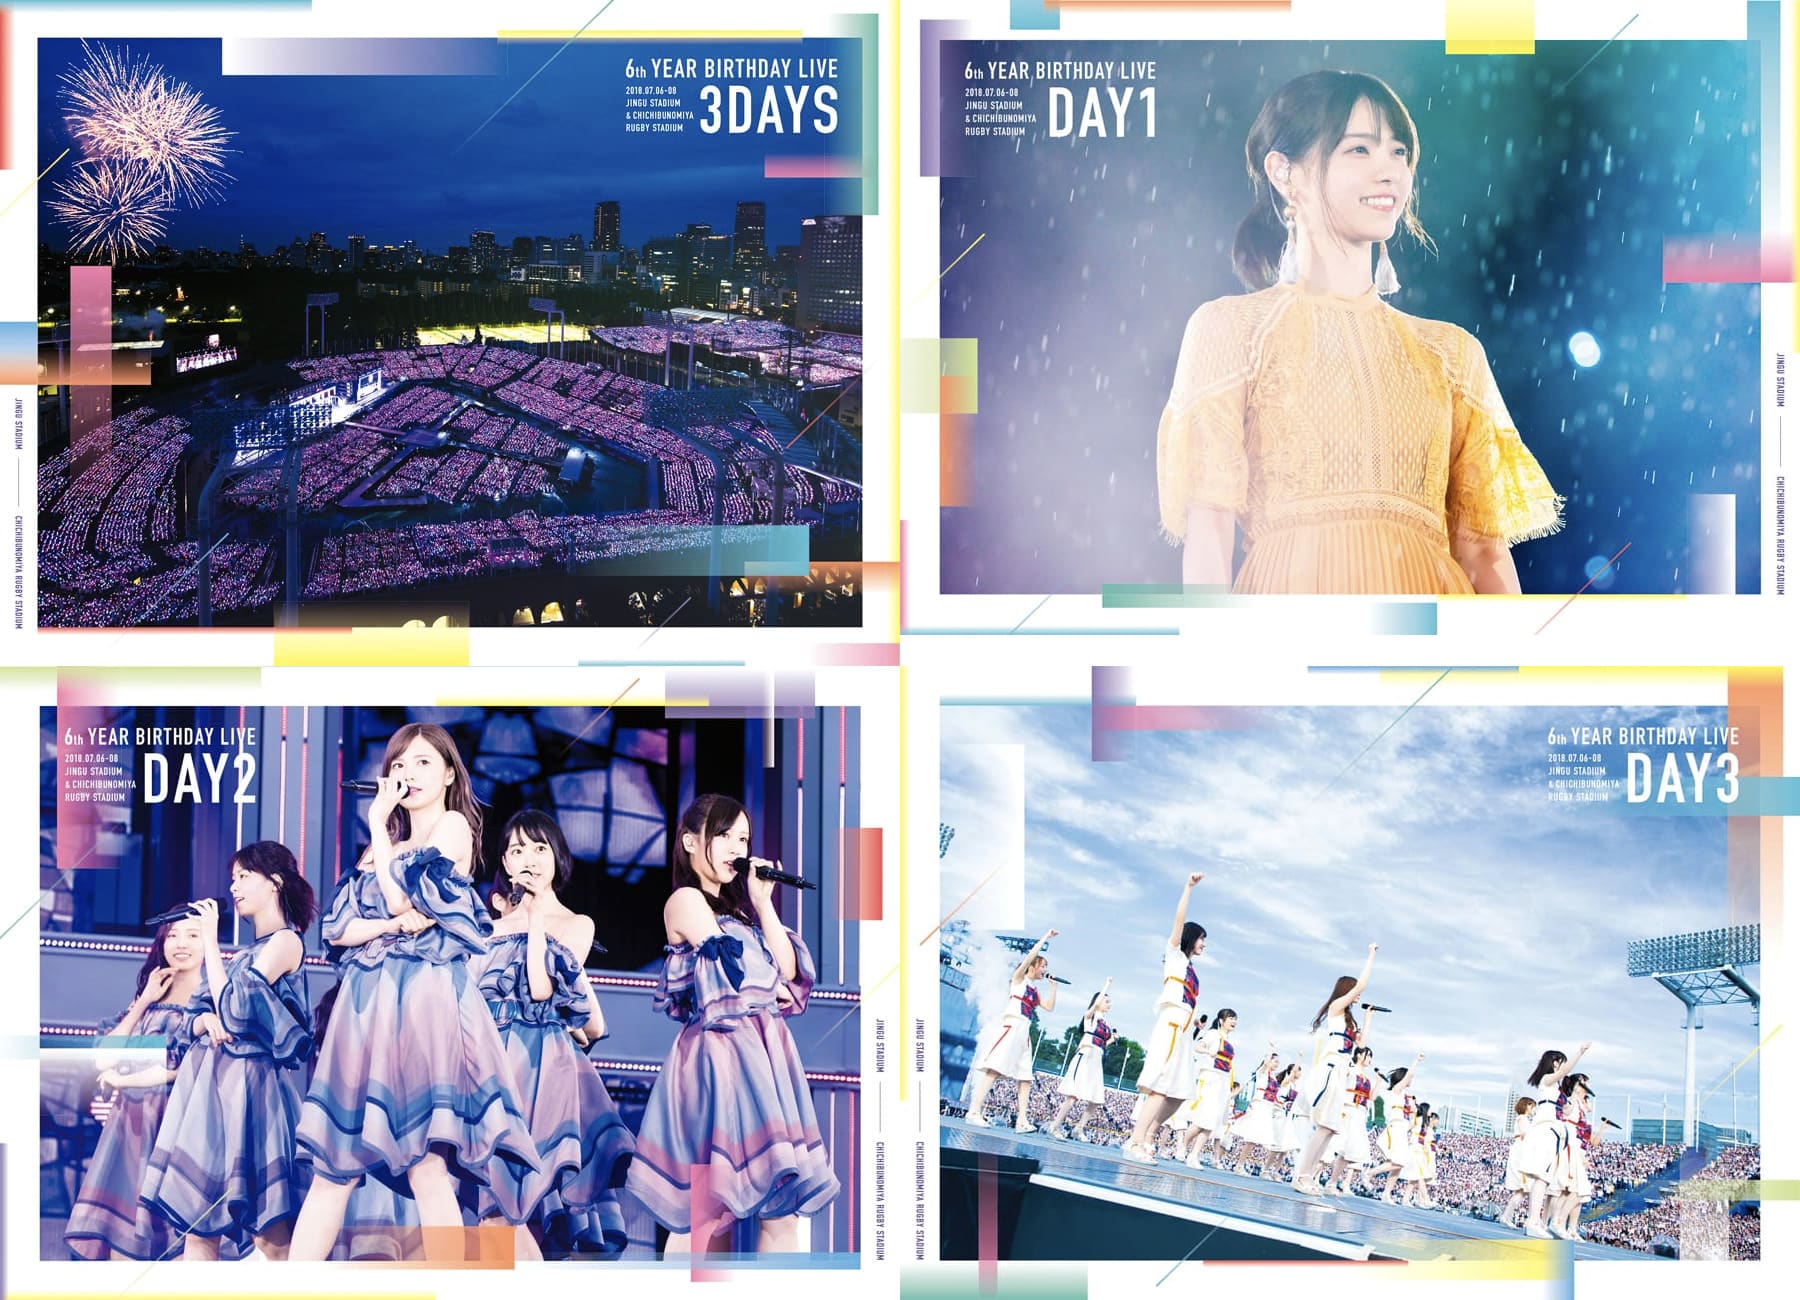 乃木坂46/6th YEAR BIRTHDAY LIVE 3days - ミュージック